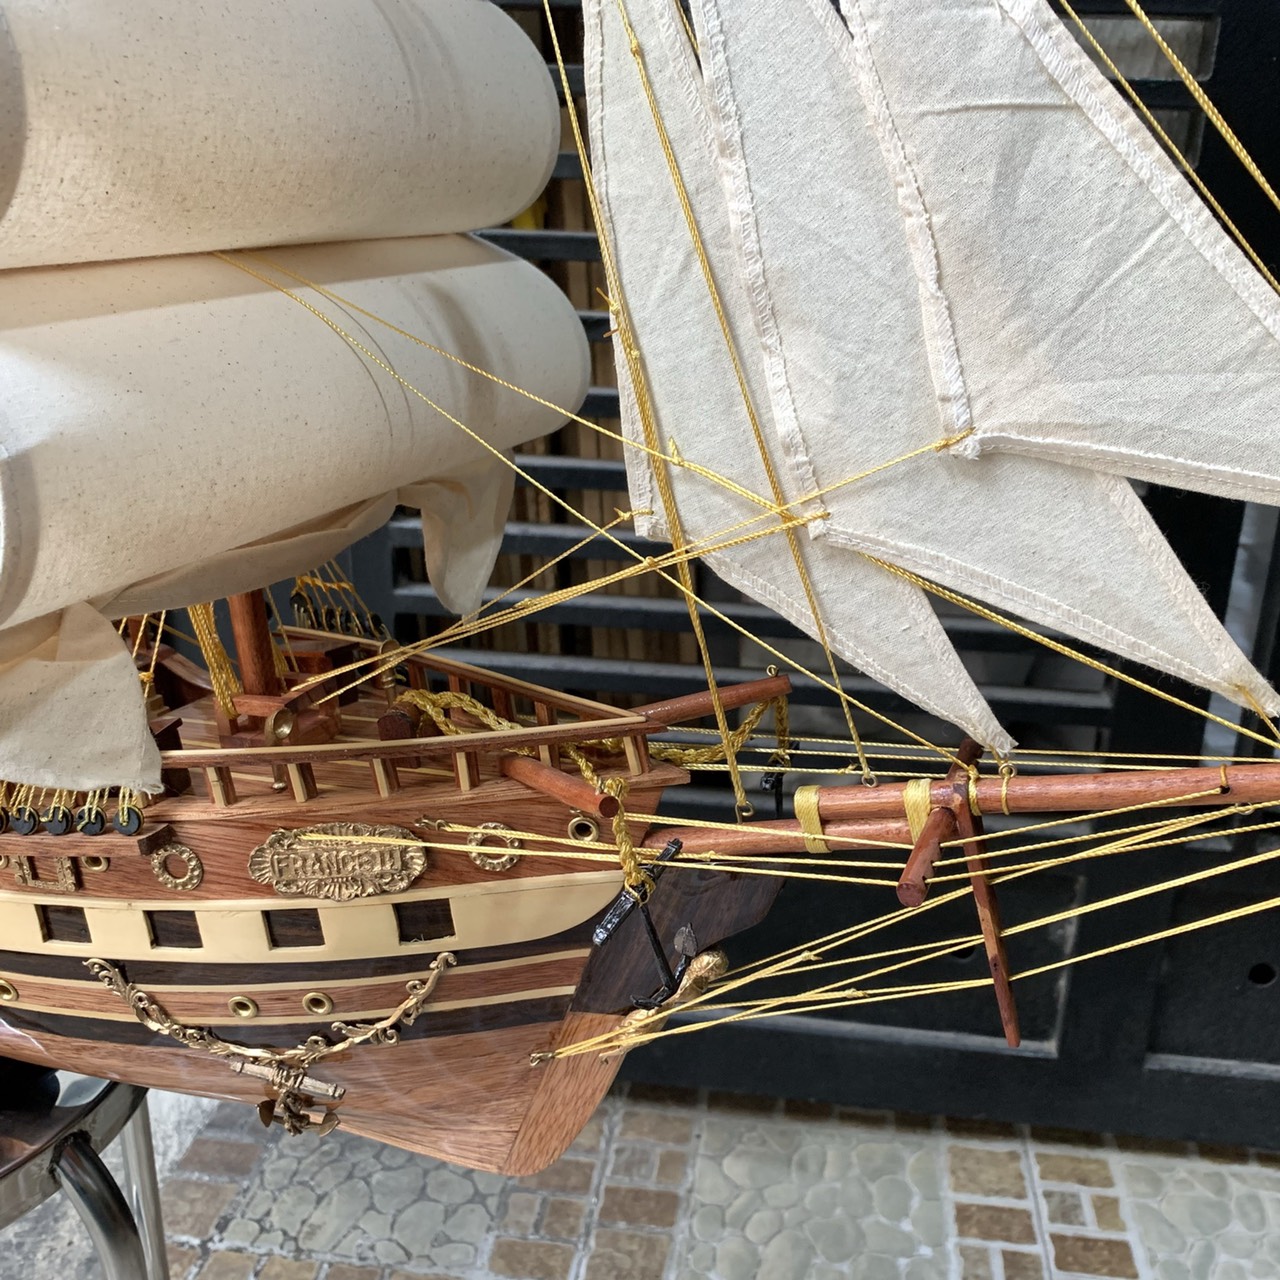 [Dài 100cm - chuẩn xuất khẩu] Mô hình thuyền gỗ thuyền trang trí tàu chở hàng France II - Gỗ xoan đào đỏ - Thân tàu dài 80cm - Buồm vải bố